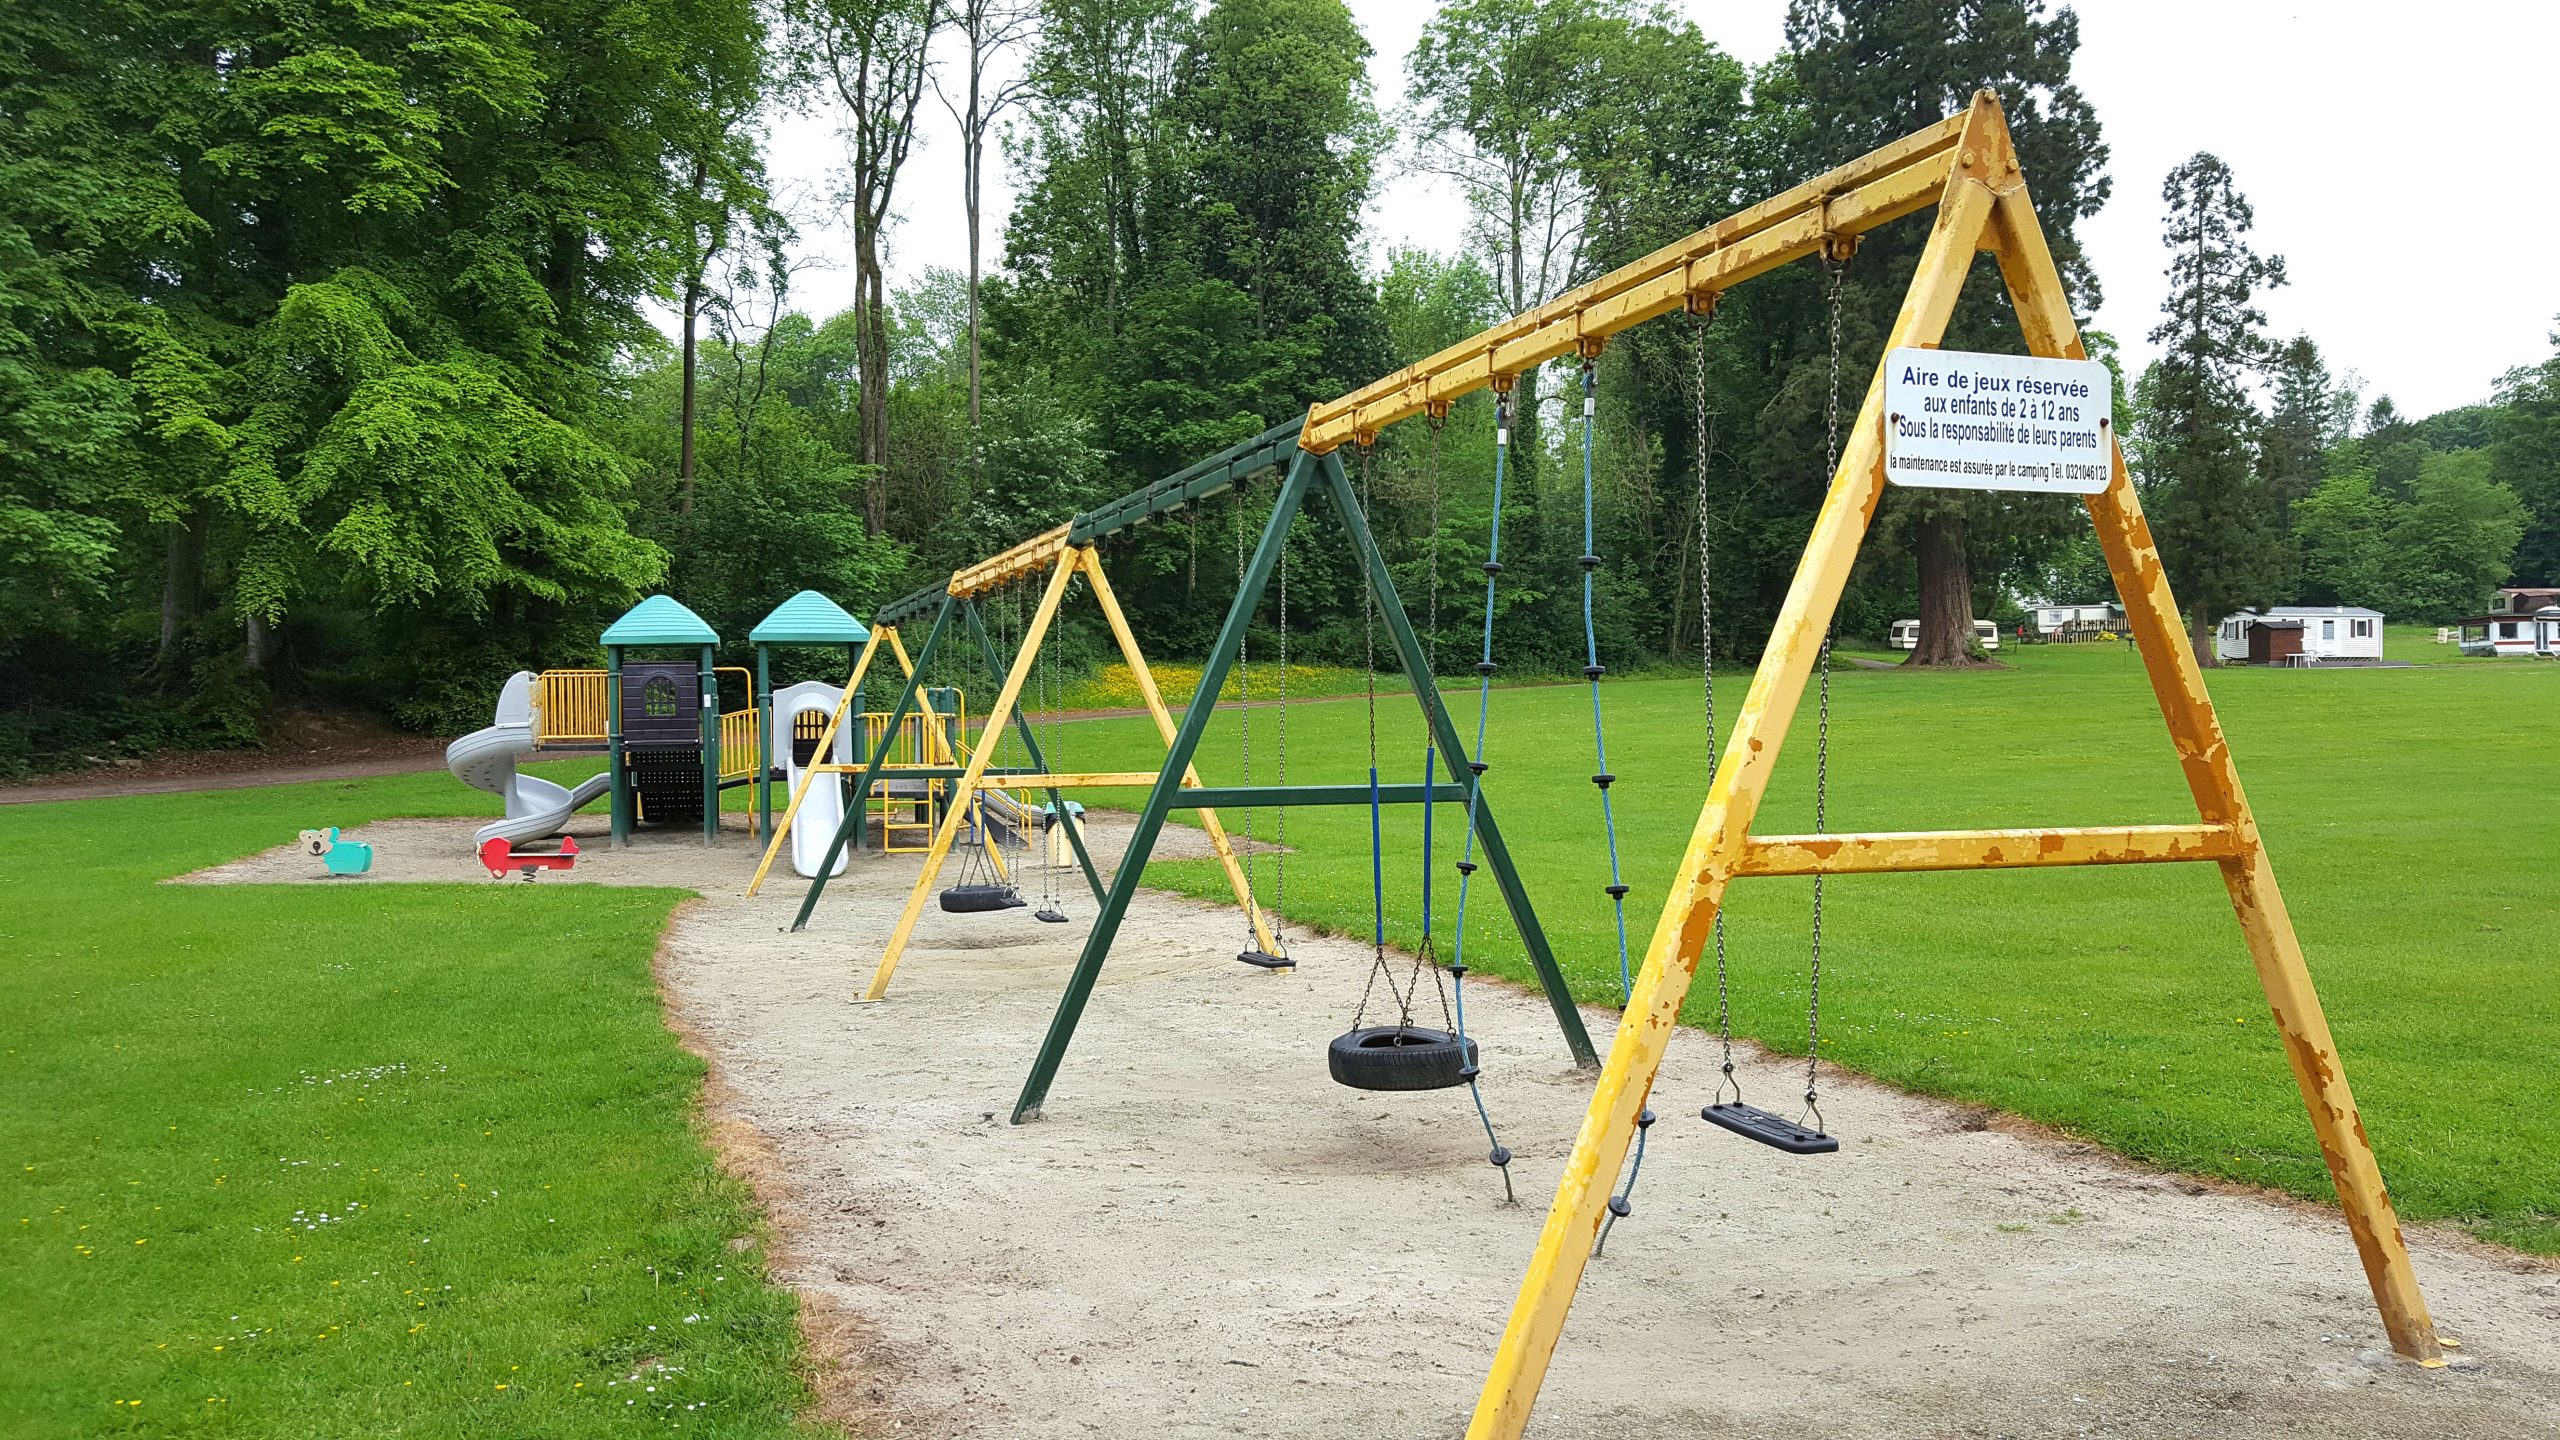 Pour les enfants : Une aire de jeux est installée au centre du parc afin que vous puissiez avoir un œil sur eux en permanence. Toboggans, balançoires, ping-pong